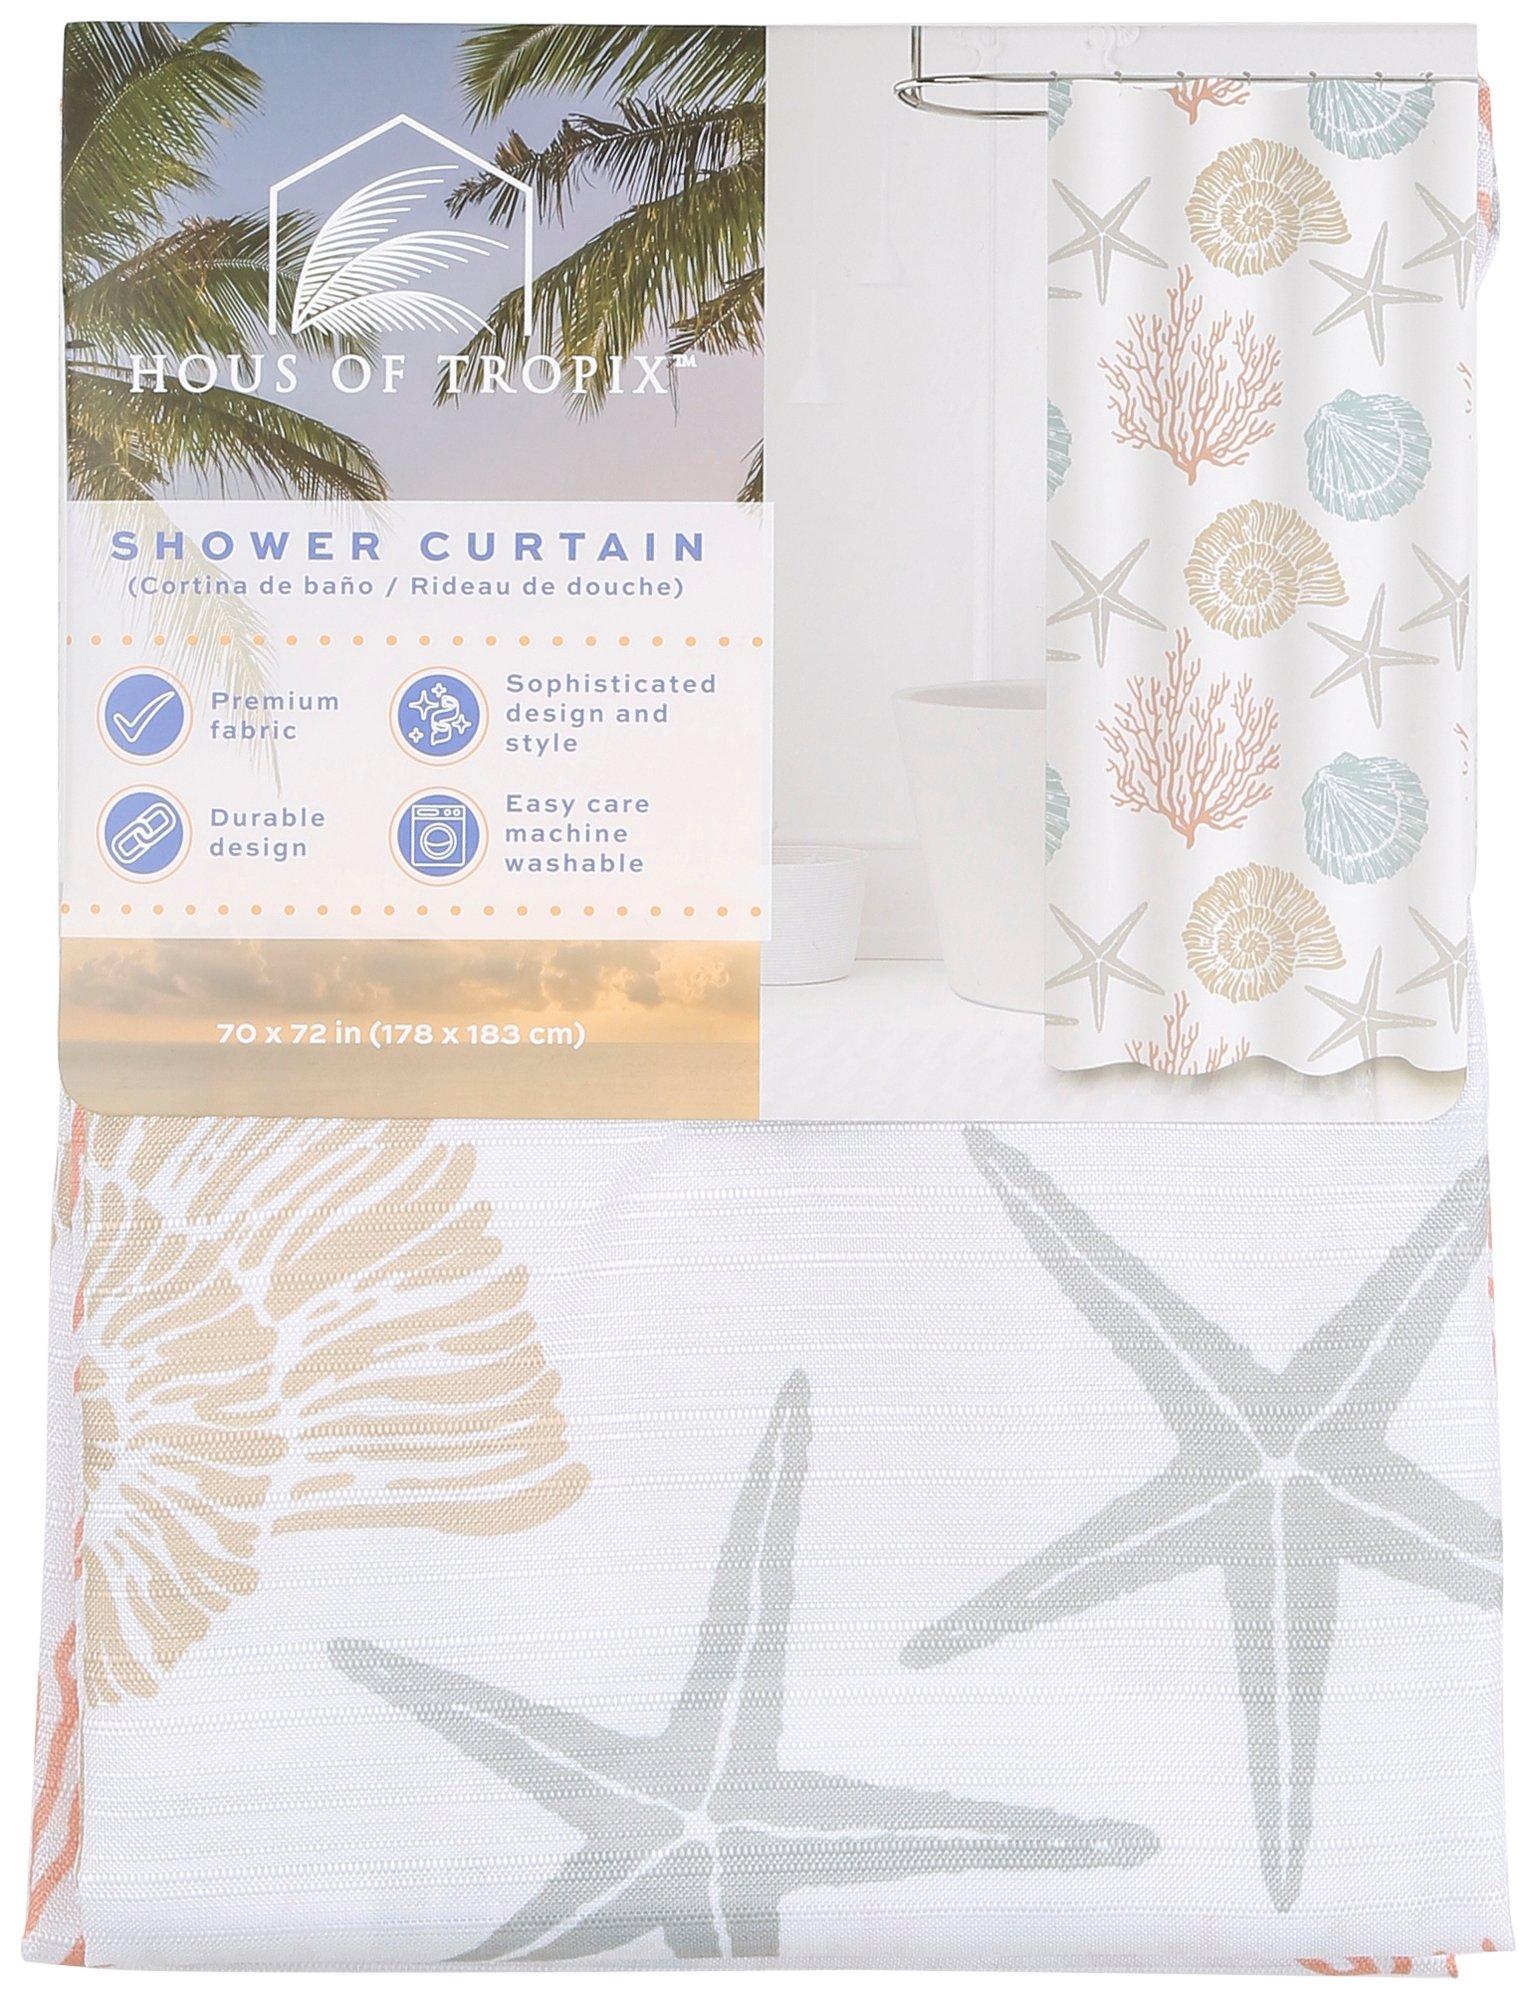 Caribbean Joe Starfish Shower Curtain & Shower Hooks